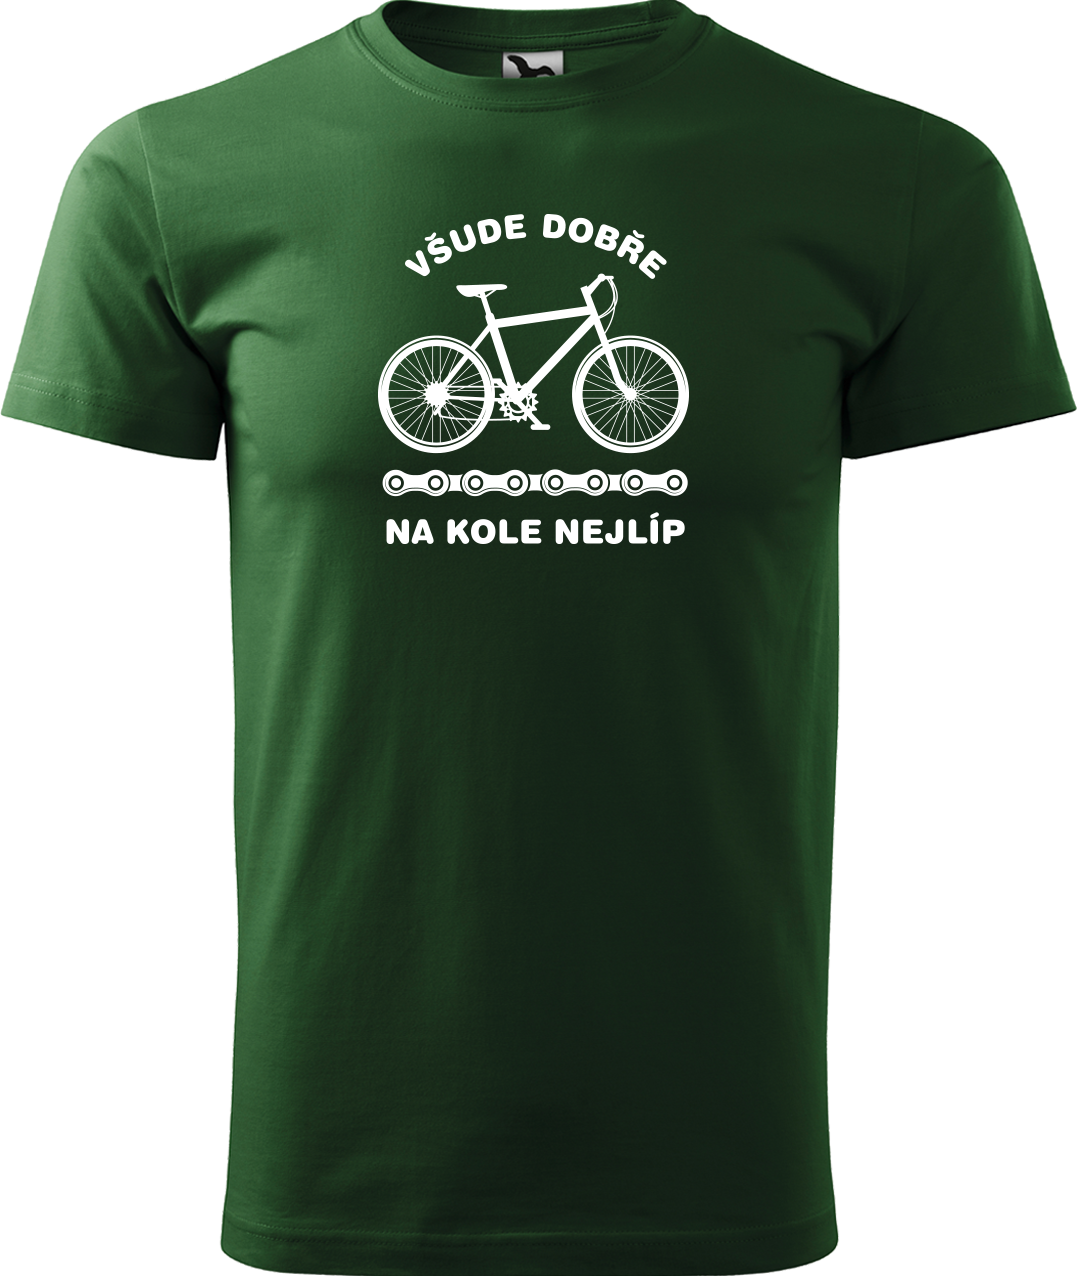 Pánské tričko s kolem - Všude dobře, na kole nejlíp Velikost: L, Barva: Lahvově zelená (06)